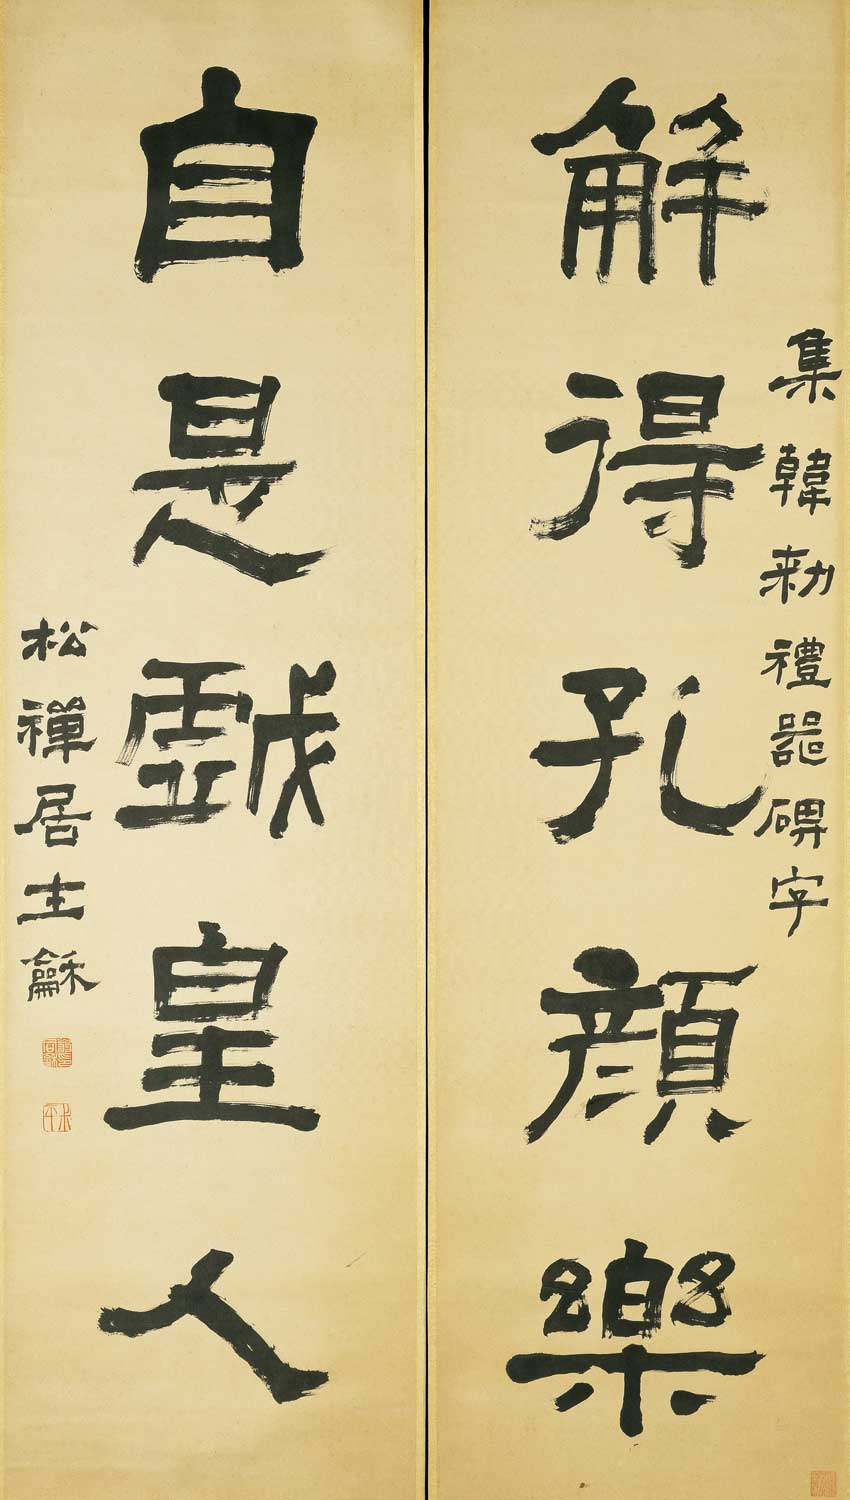 翁同龢《隶书解得自是五言联》-台北故宫博物院藏(图1)